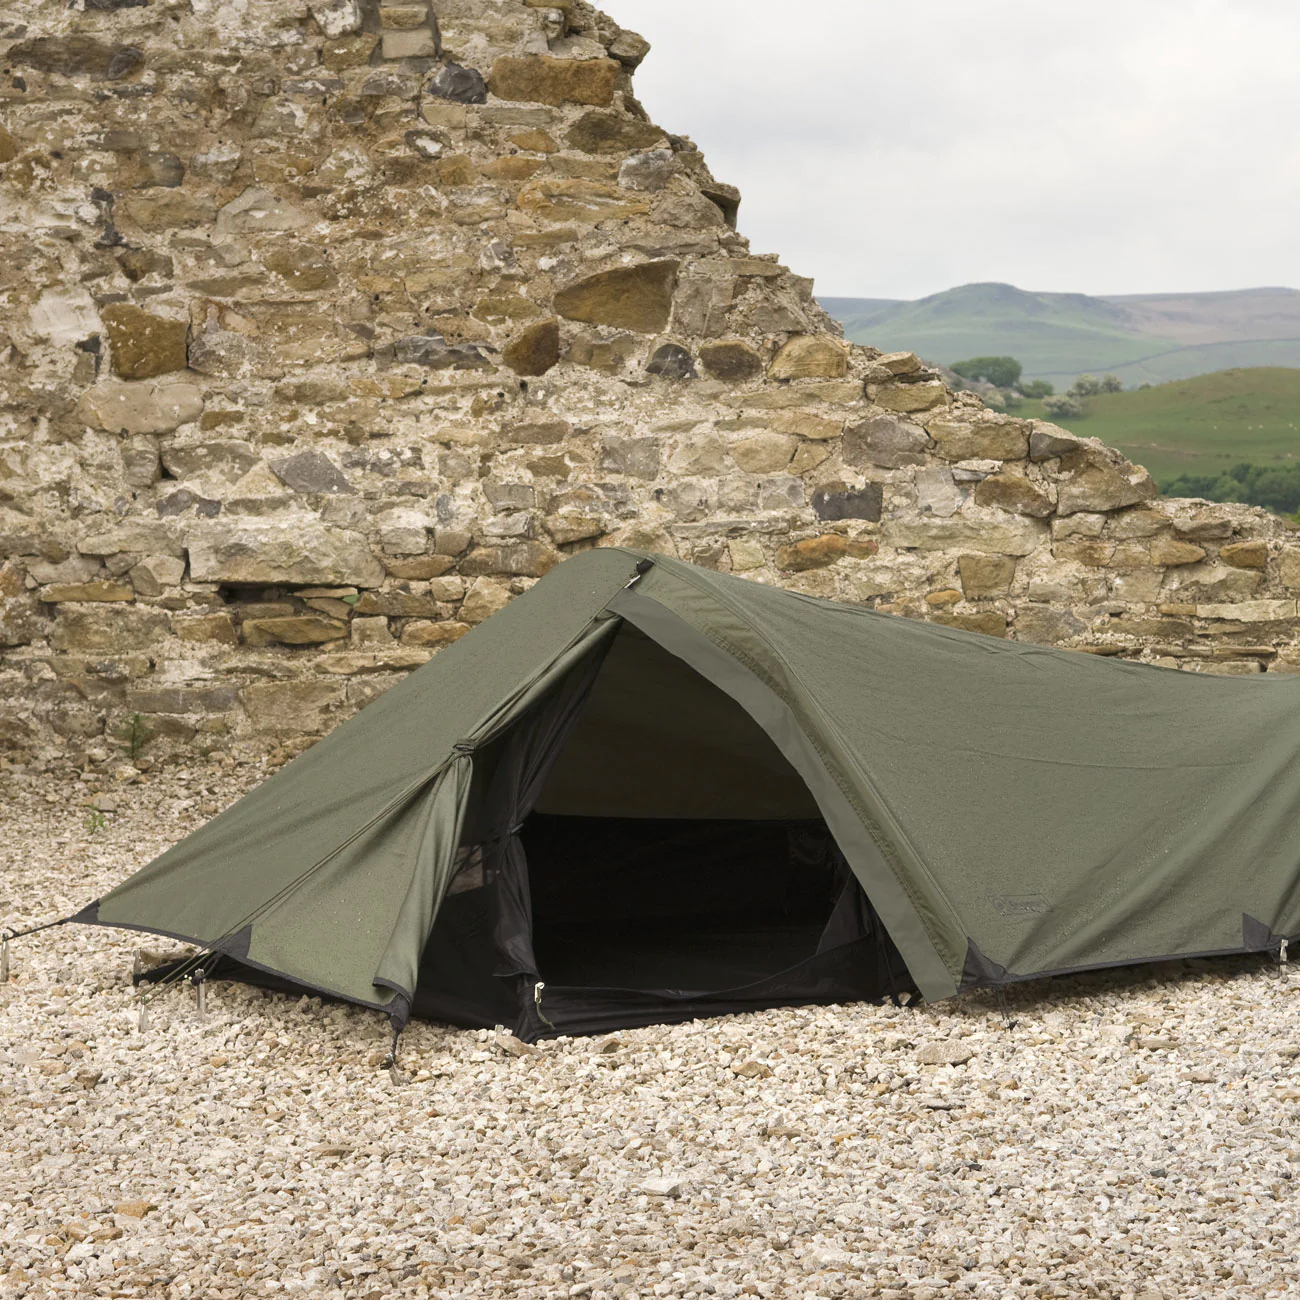 스너그팩 아이너스피어 텐트 Snugpak Ionosphere Tent 1인용 텐트